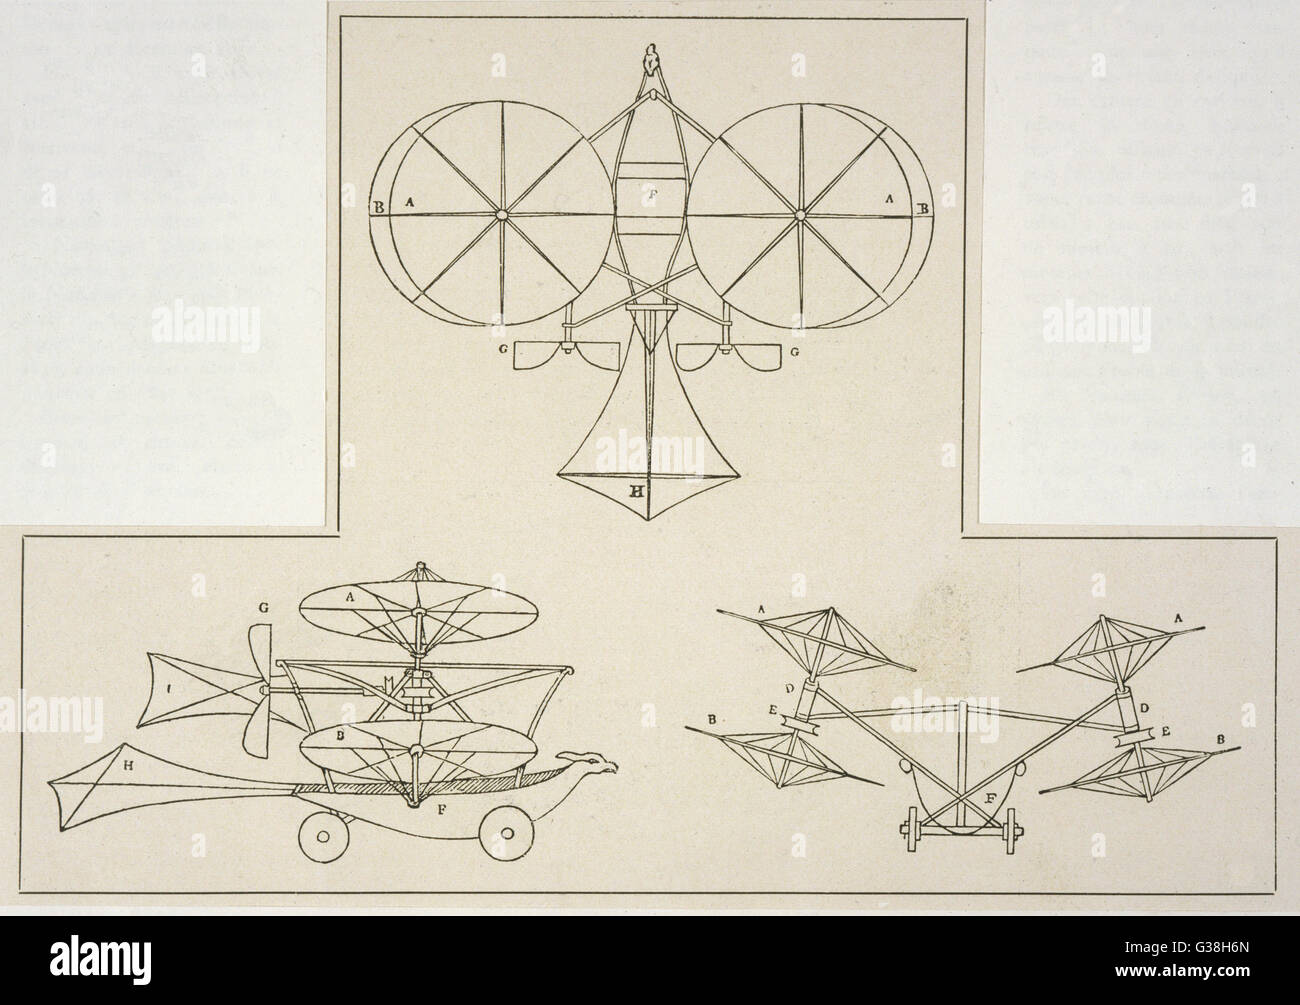 CAYLEY'S ELICOTTERO-aereo con due laterali di rotori di elicotteri per fornire ascensore e due eliche di propulsione, questo è un numero sorprendentemente lontano- avvistato proposta data: 1843 Foto Stock